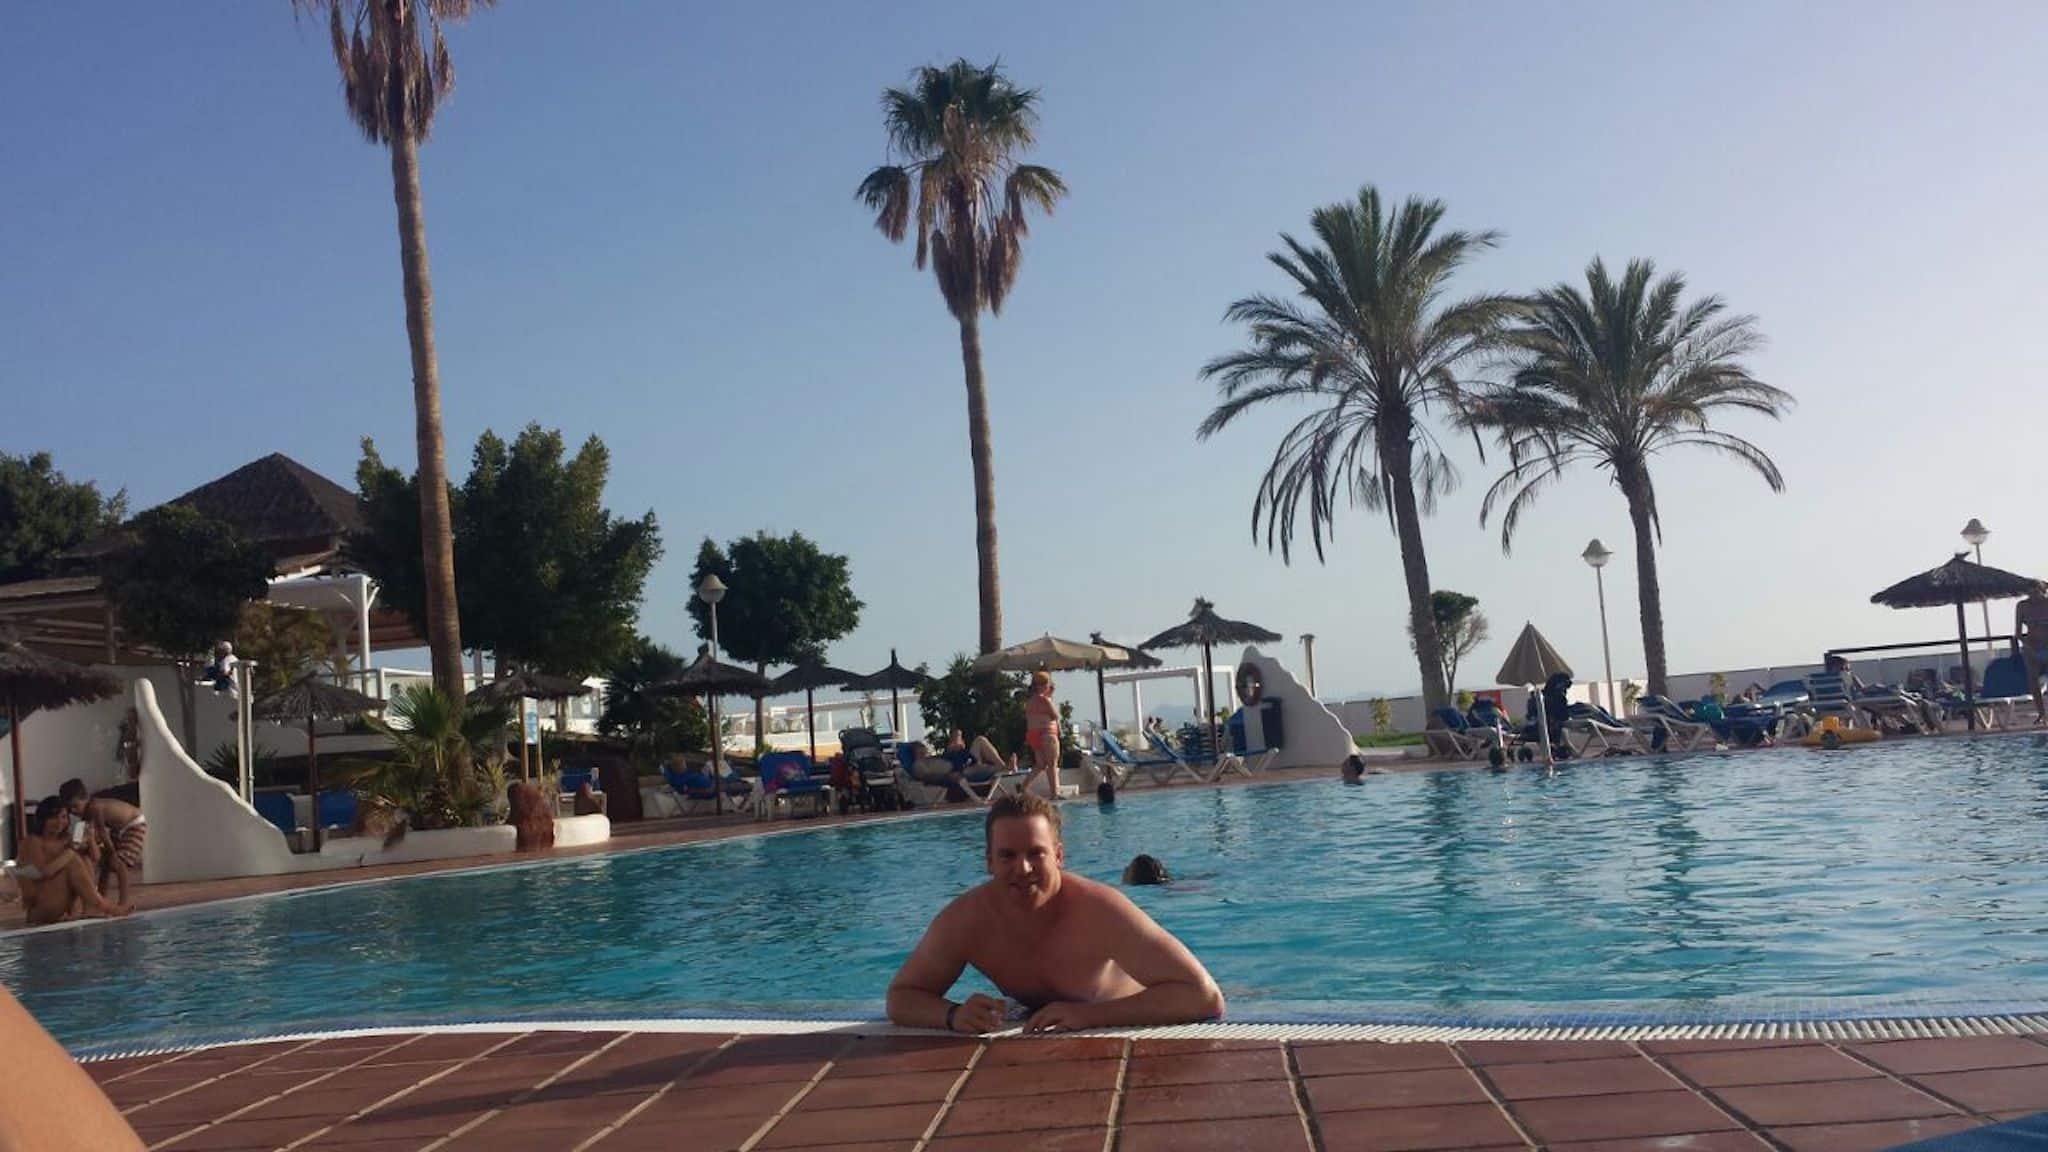 Relacja z podróży Lanzarote: Po przybyciu do hotelu Sandos Papagayo najpierw zrelaksowaliśmy się w basenie.